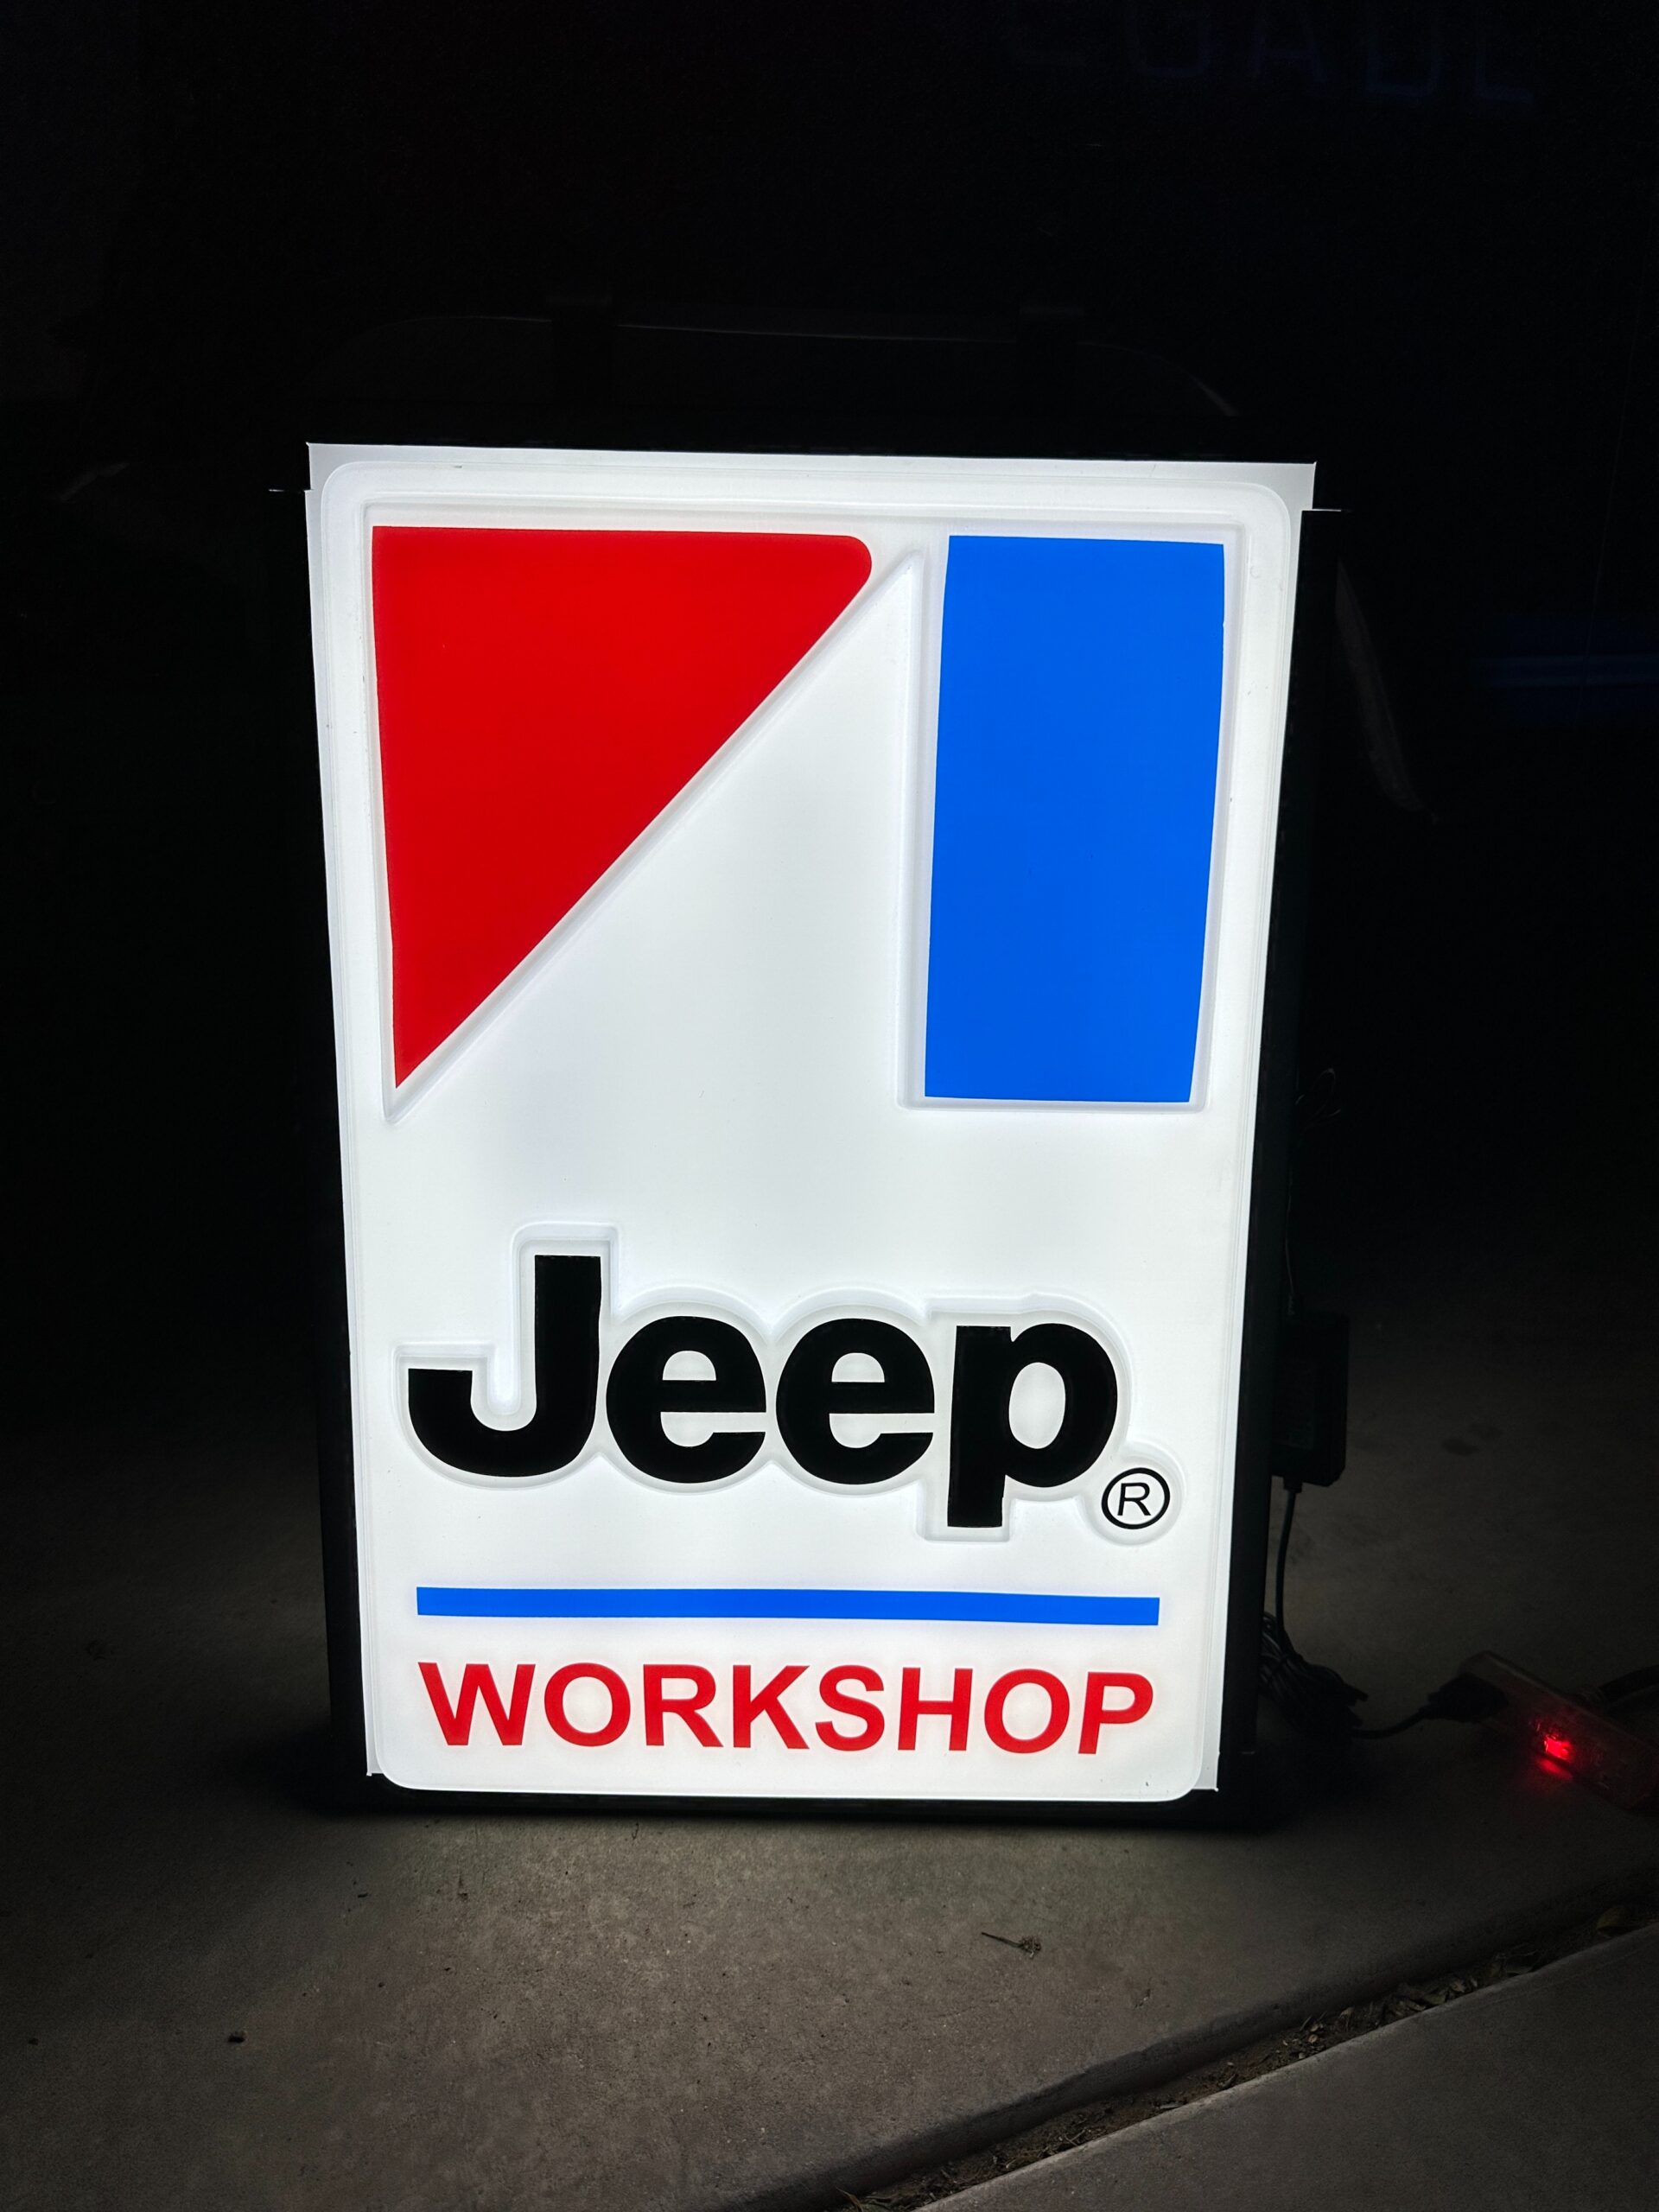 Rare AMC Jeep Workshop backlite sign 2